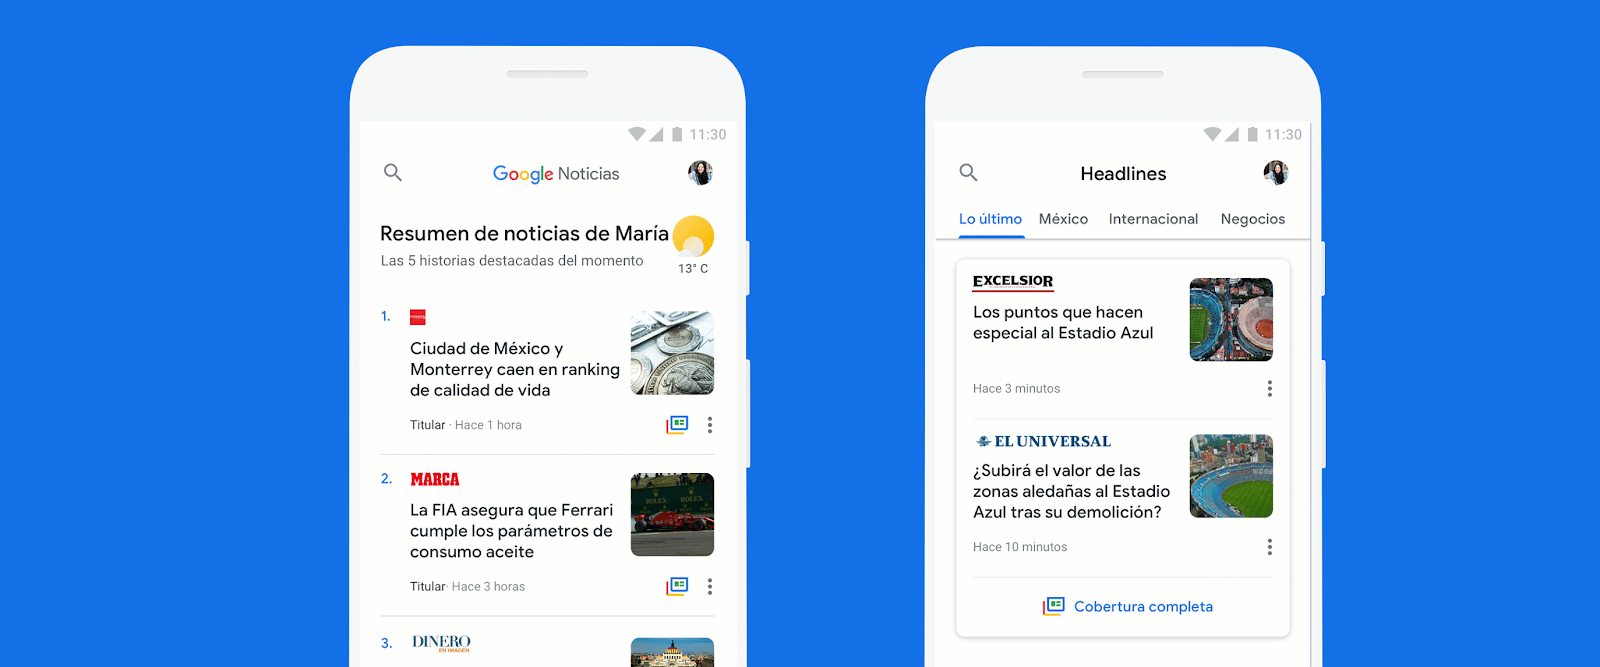 การออกแบบ Google News ใหม่ช่วยให้คุณได้รับข้อมูลข่าวสารที่สำคัญที่สุดในแต่ละวัน